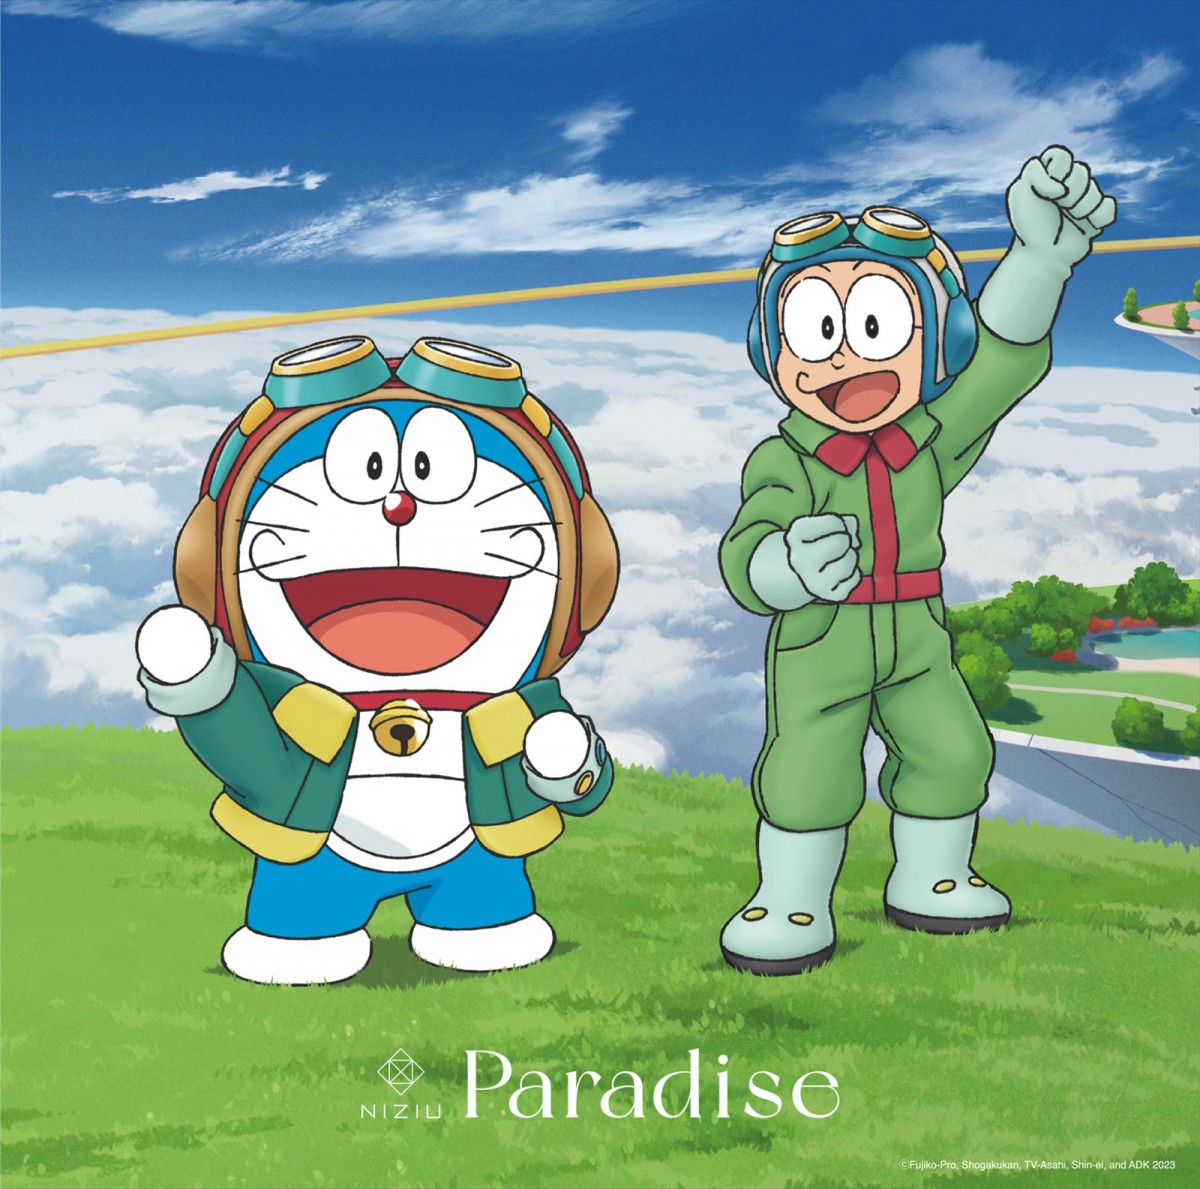 『映画ドラえもん のび太と空の理想郷』、NiziUの主題歌「Paradise」を使用したスペシャルPV解禁